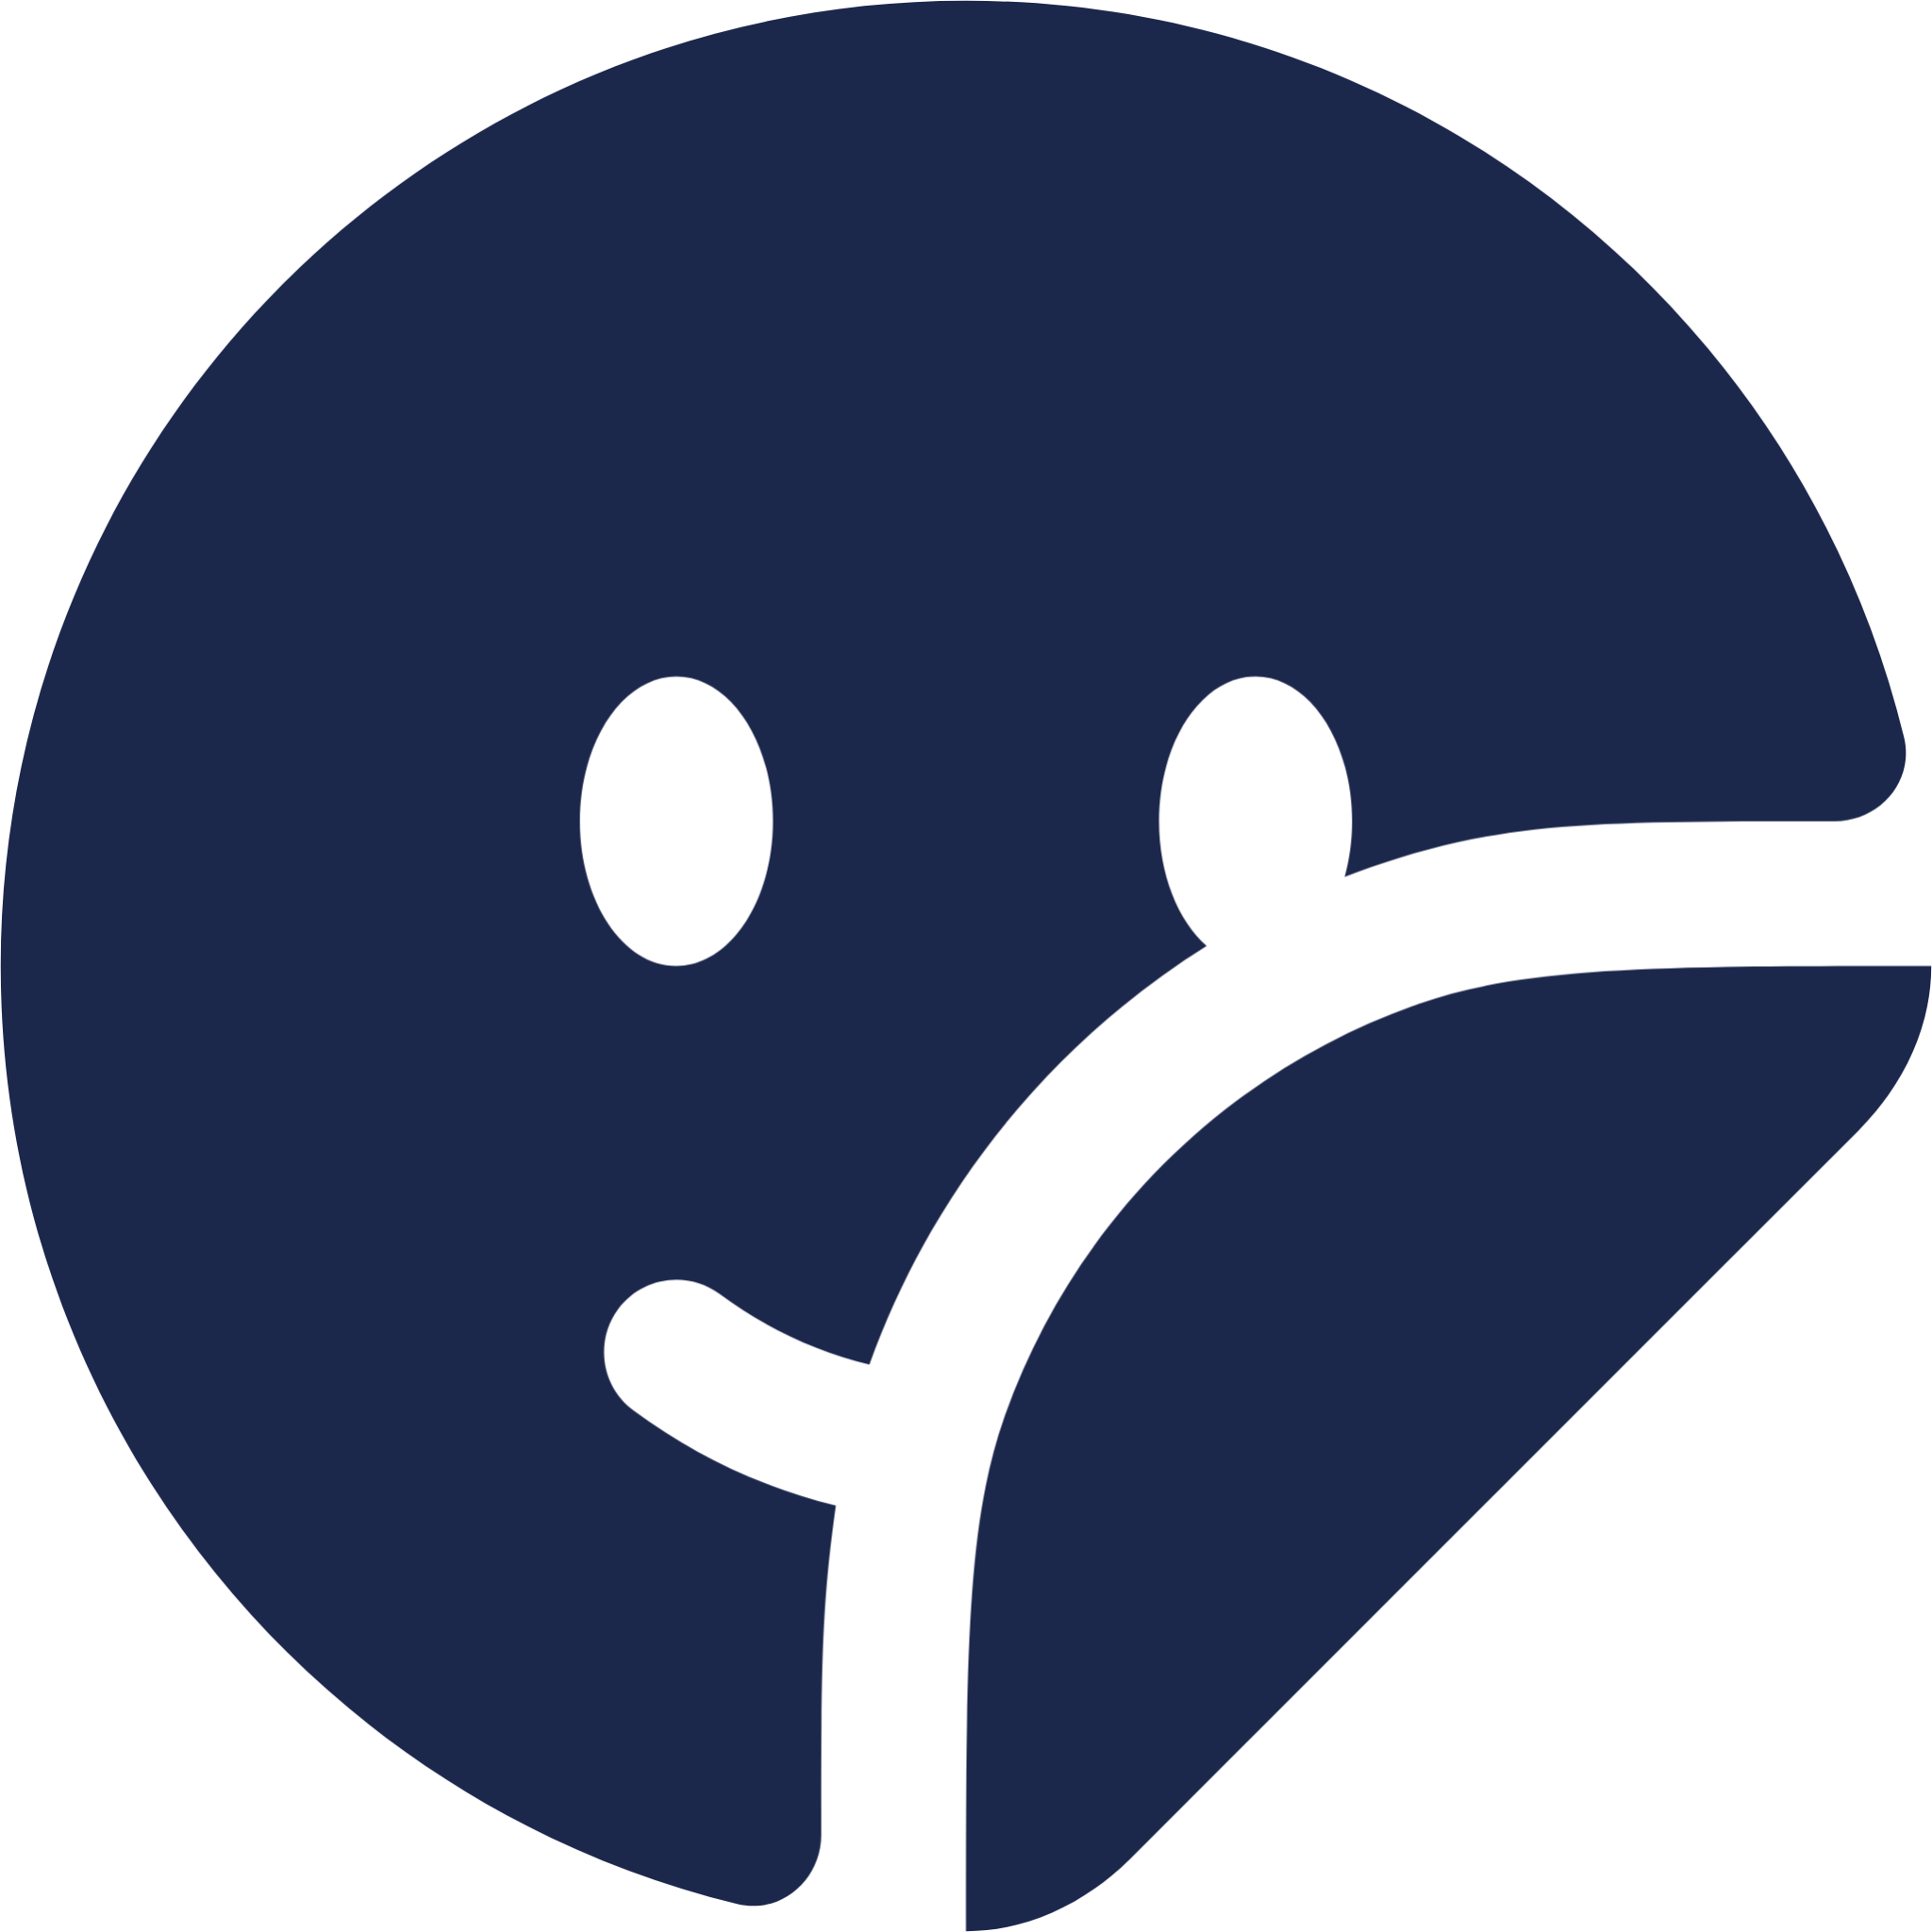 Sticker Smile Circle 2 icon